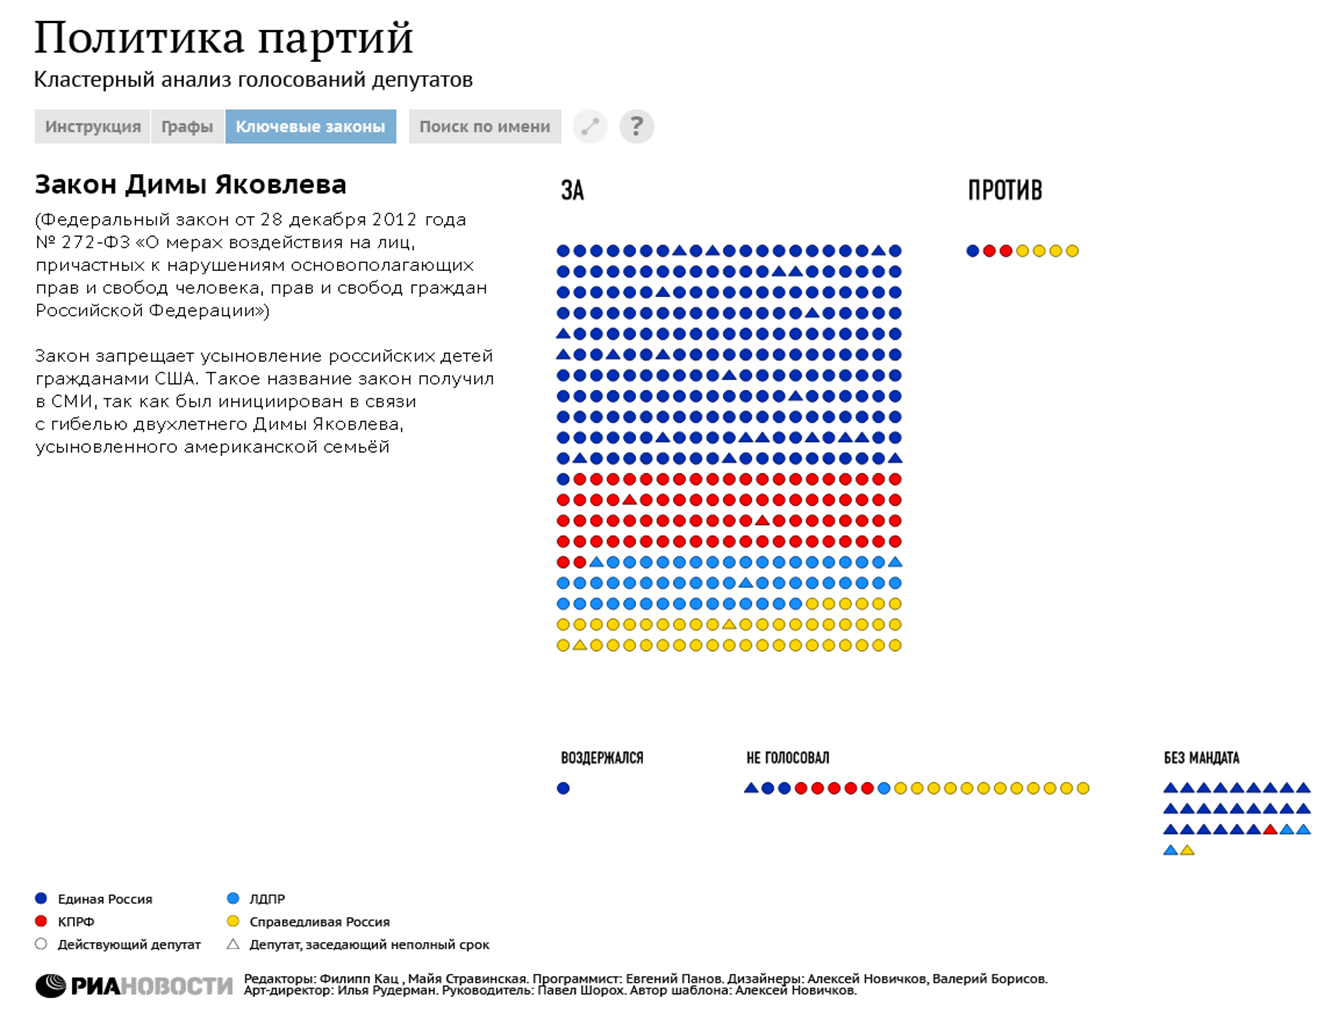 Политика партий: кластерный анализ голосований депутатов